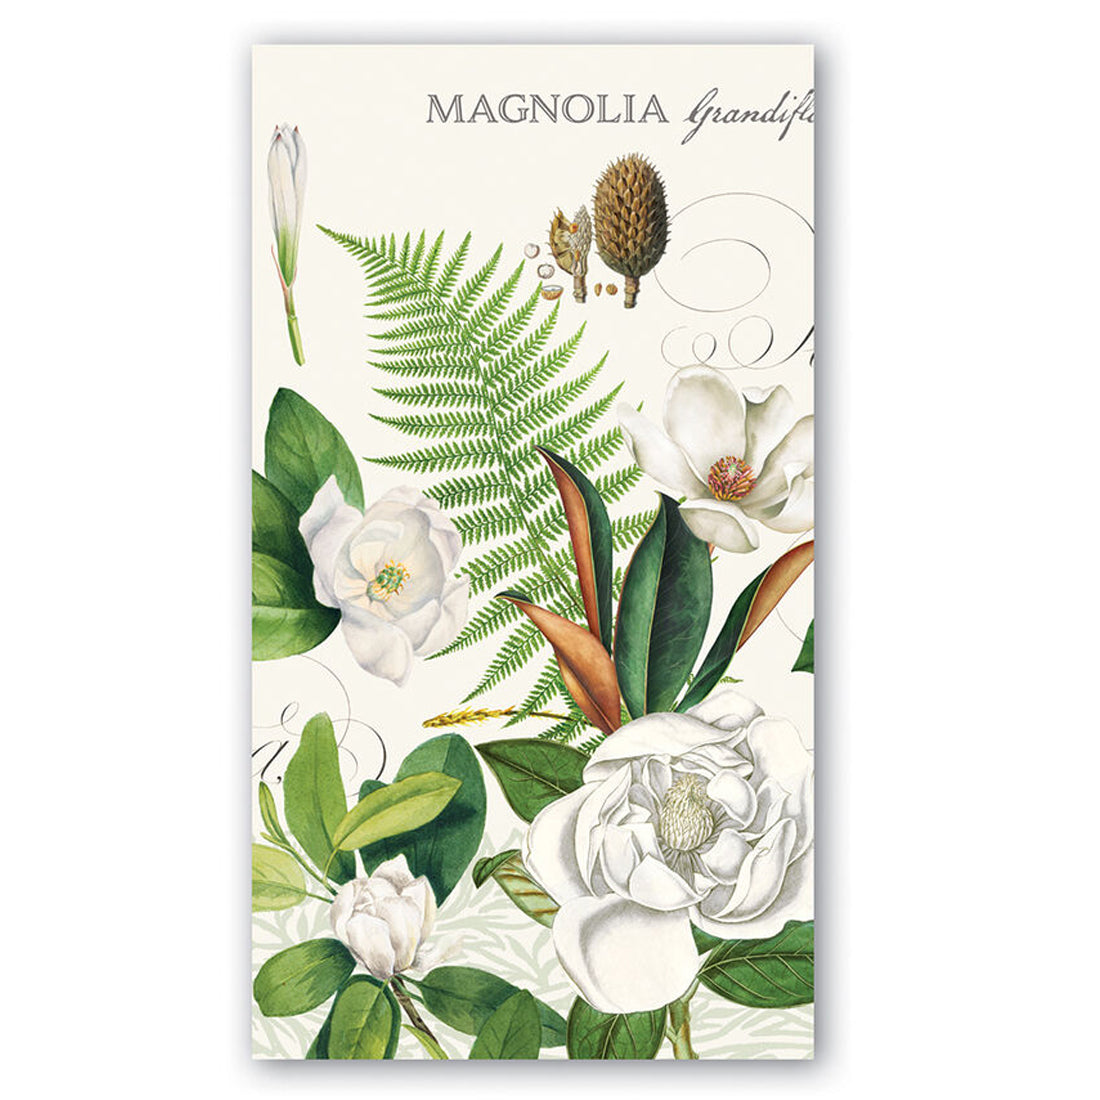 Magnolia Petals Paper Guest Towels - Buffet Napkins